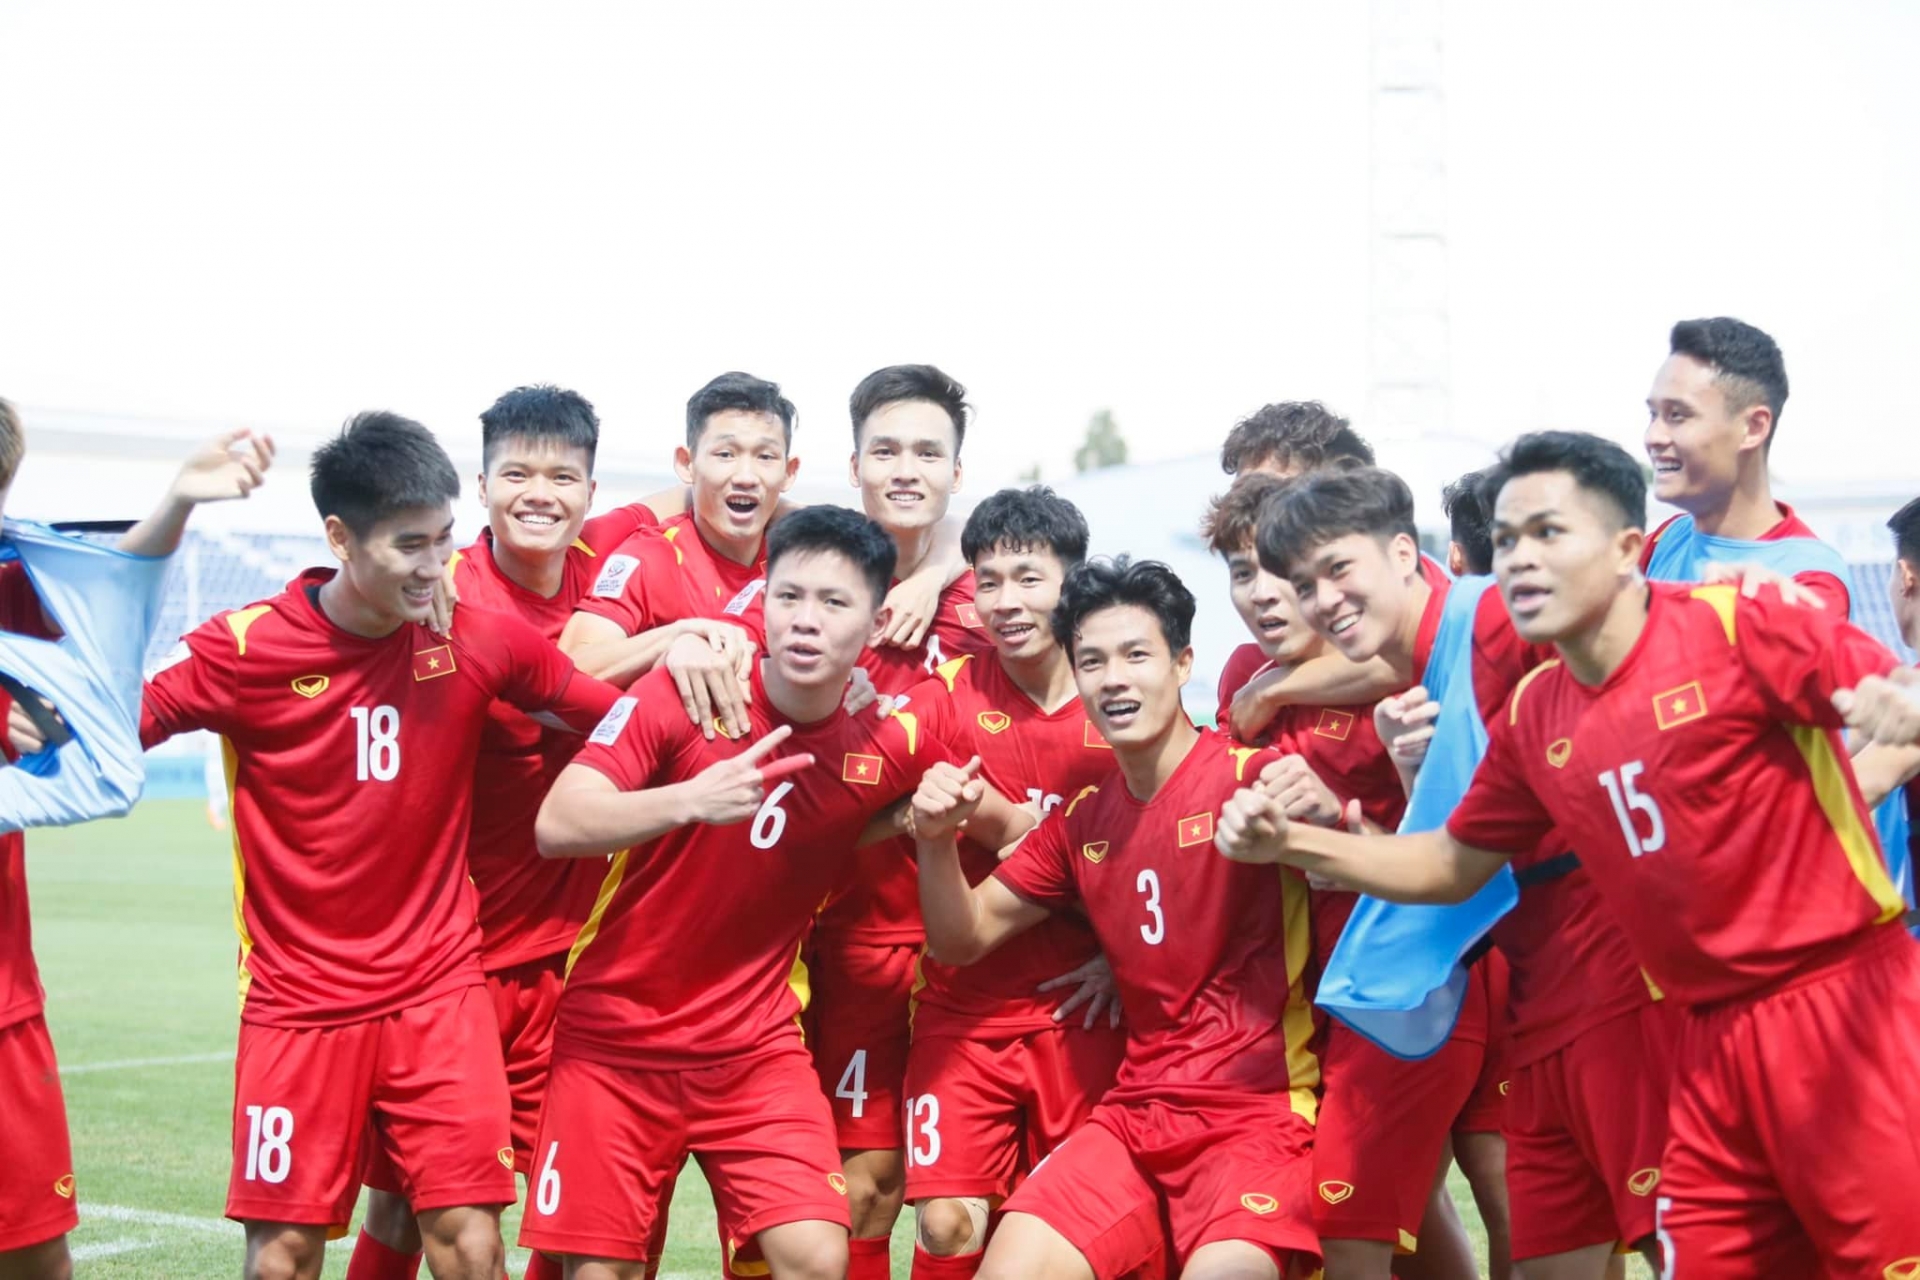 Chặng đường ĐT U23 Việt Nam tại VCK U23 châu Á: Hành trình quật cường và đầy tự hào của những chiến binh sao vàng dưới triều đại mới - Ảnh 5.